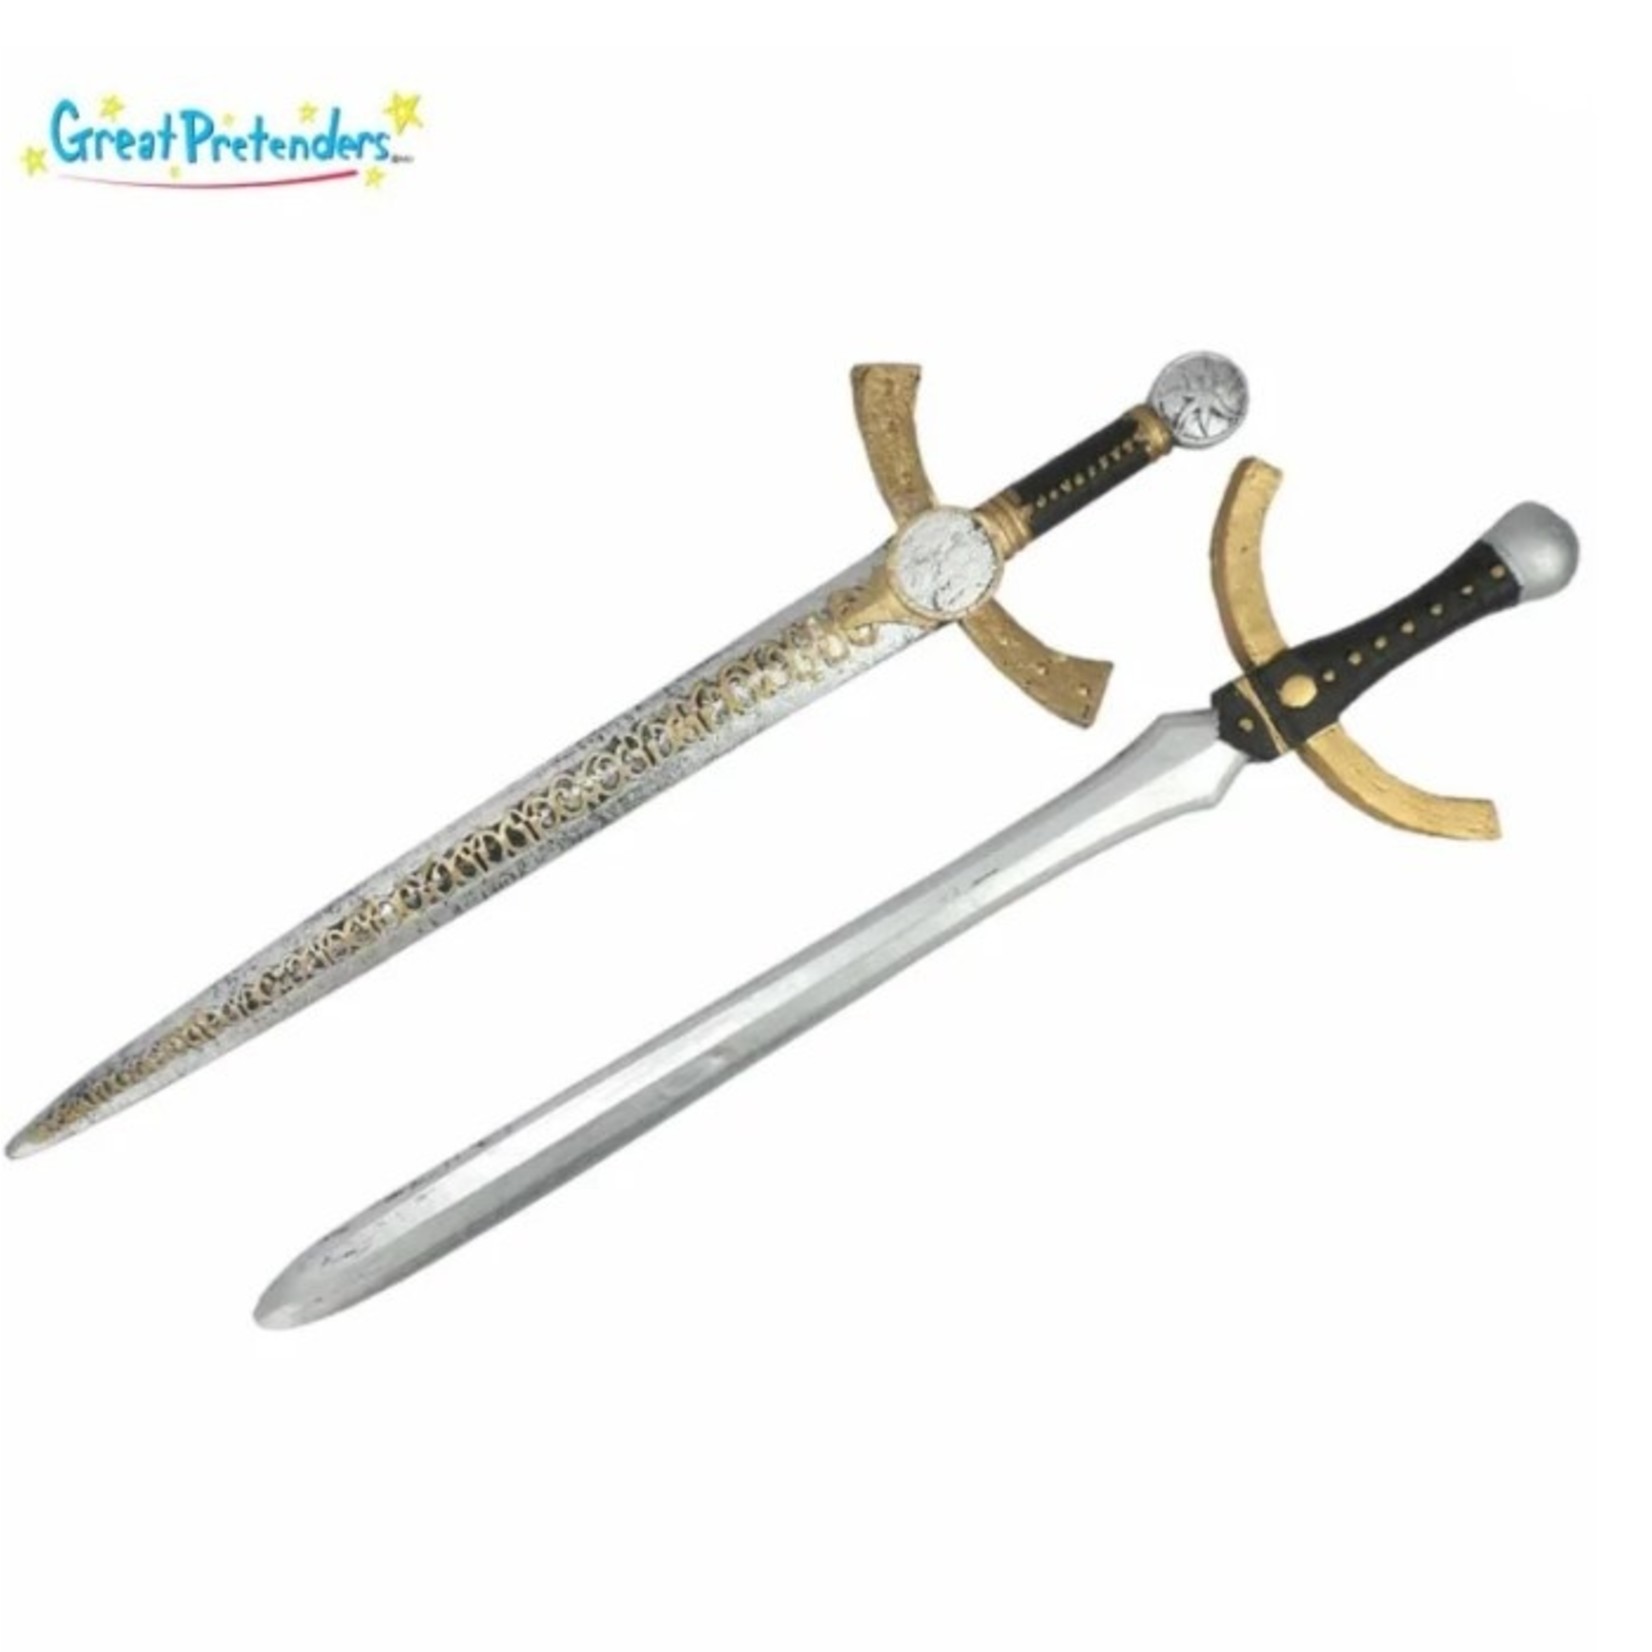 Great Pretenders GREAT PRETENDERS - Knight's sword (2 models)